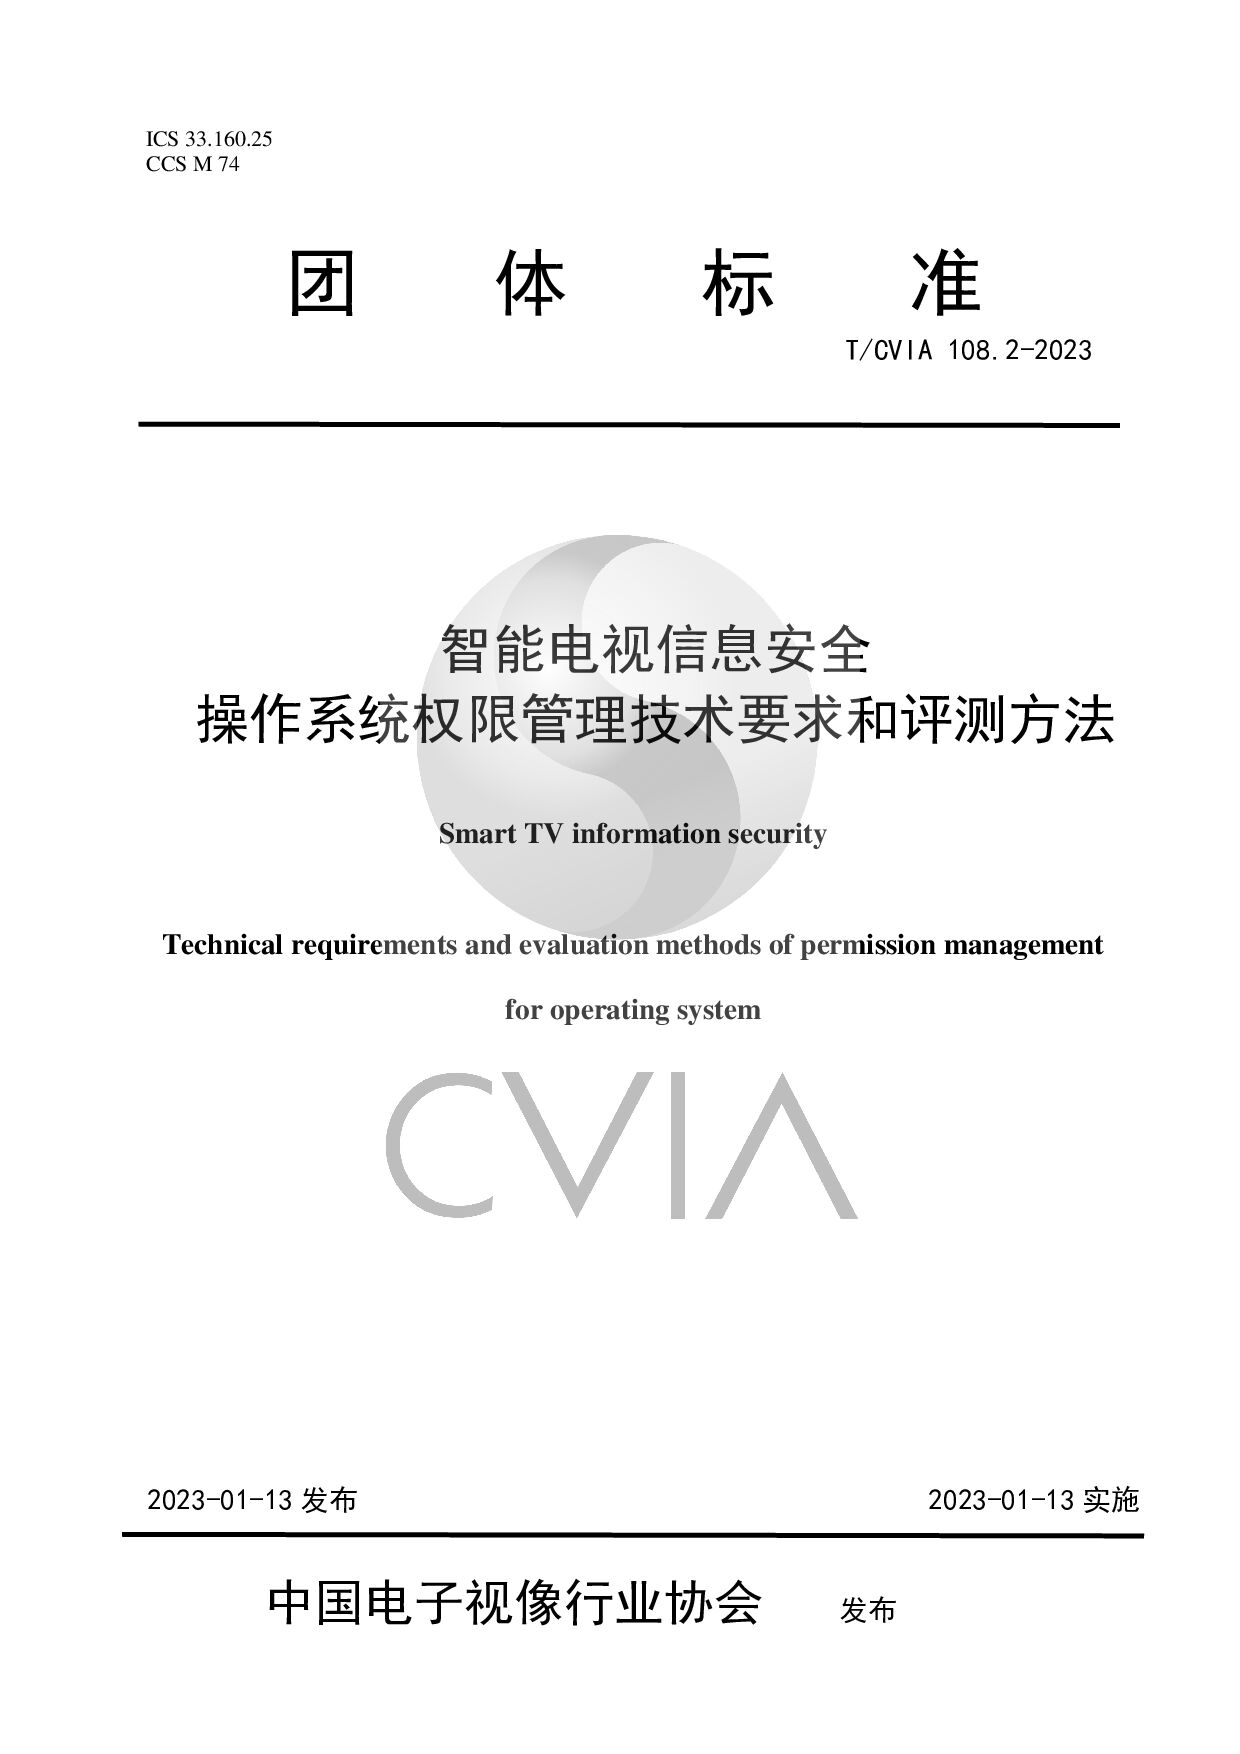 T/CVIA 108.2-2023封面图